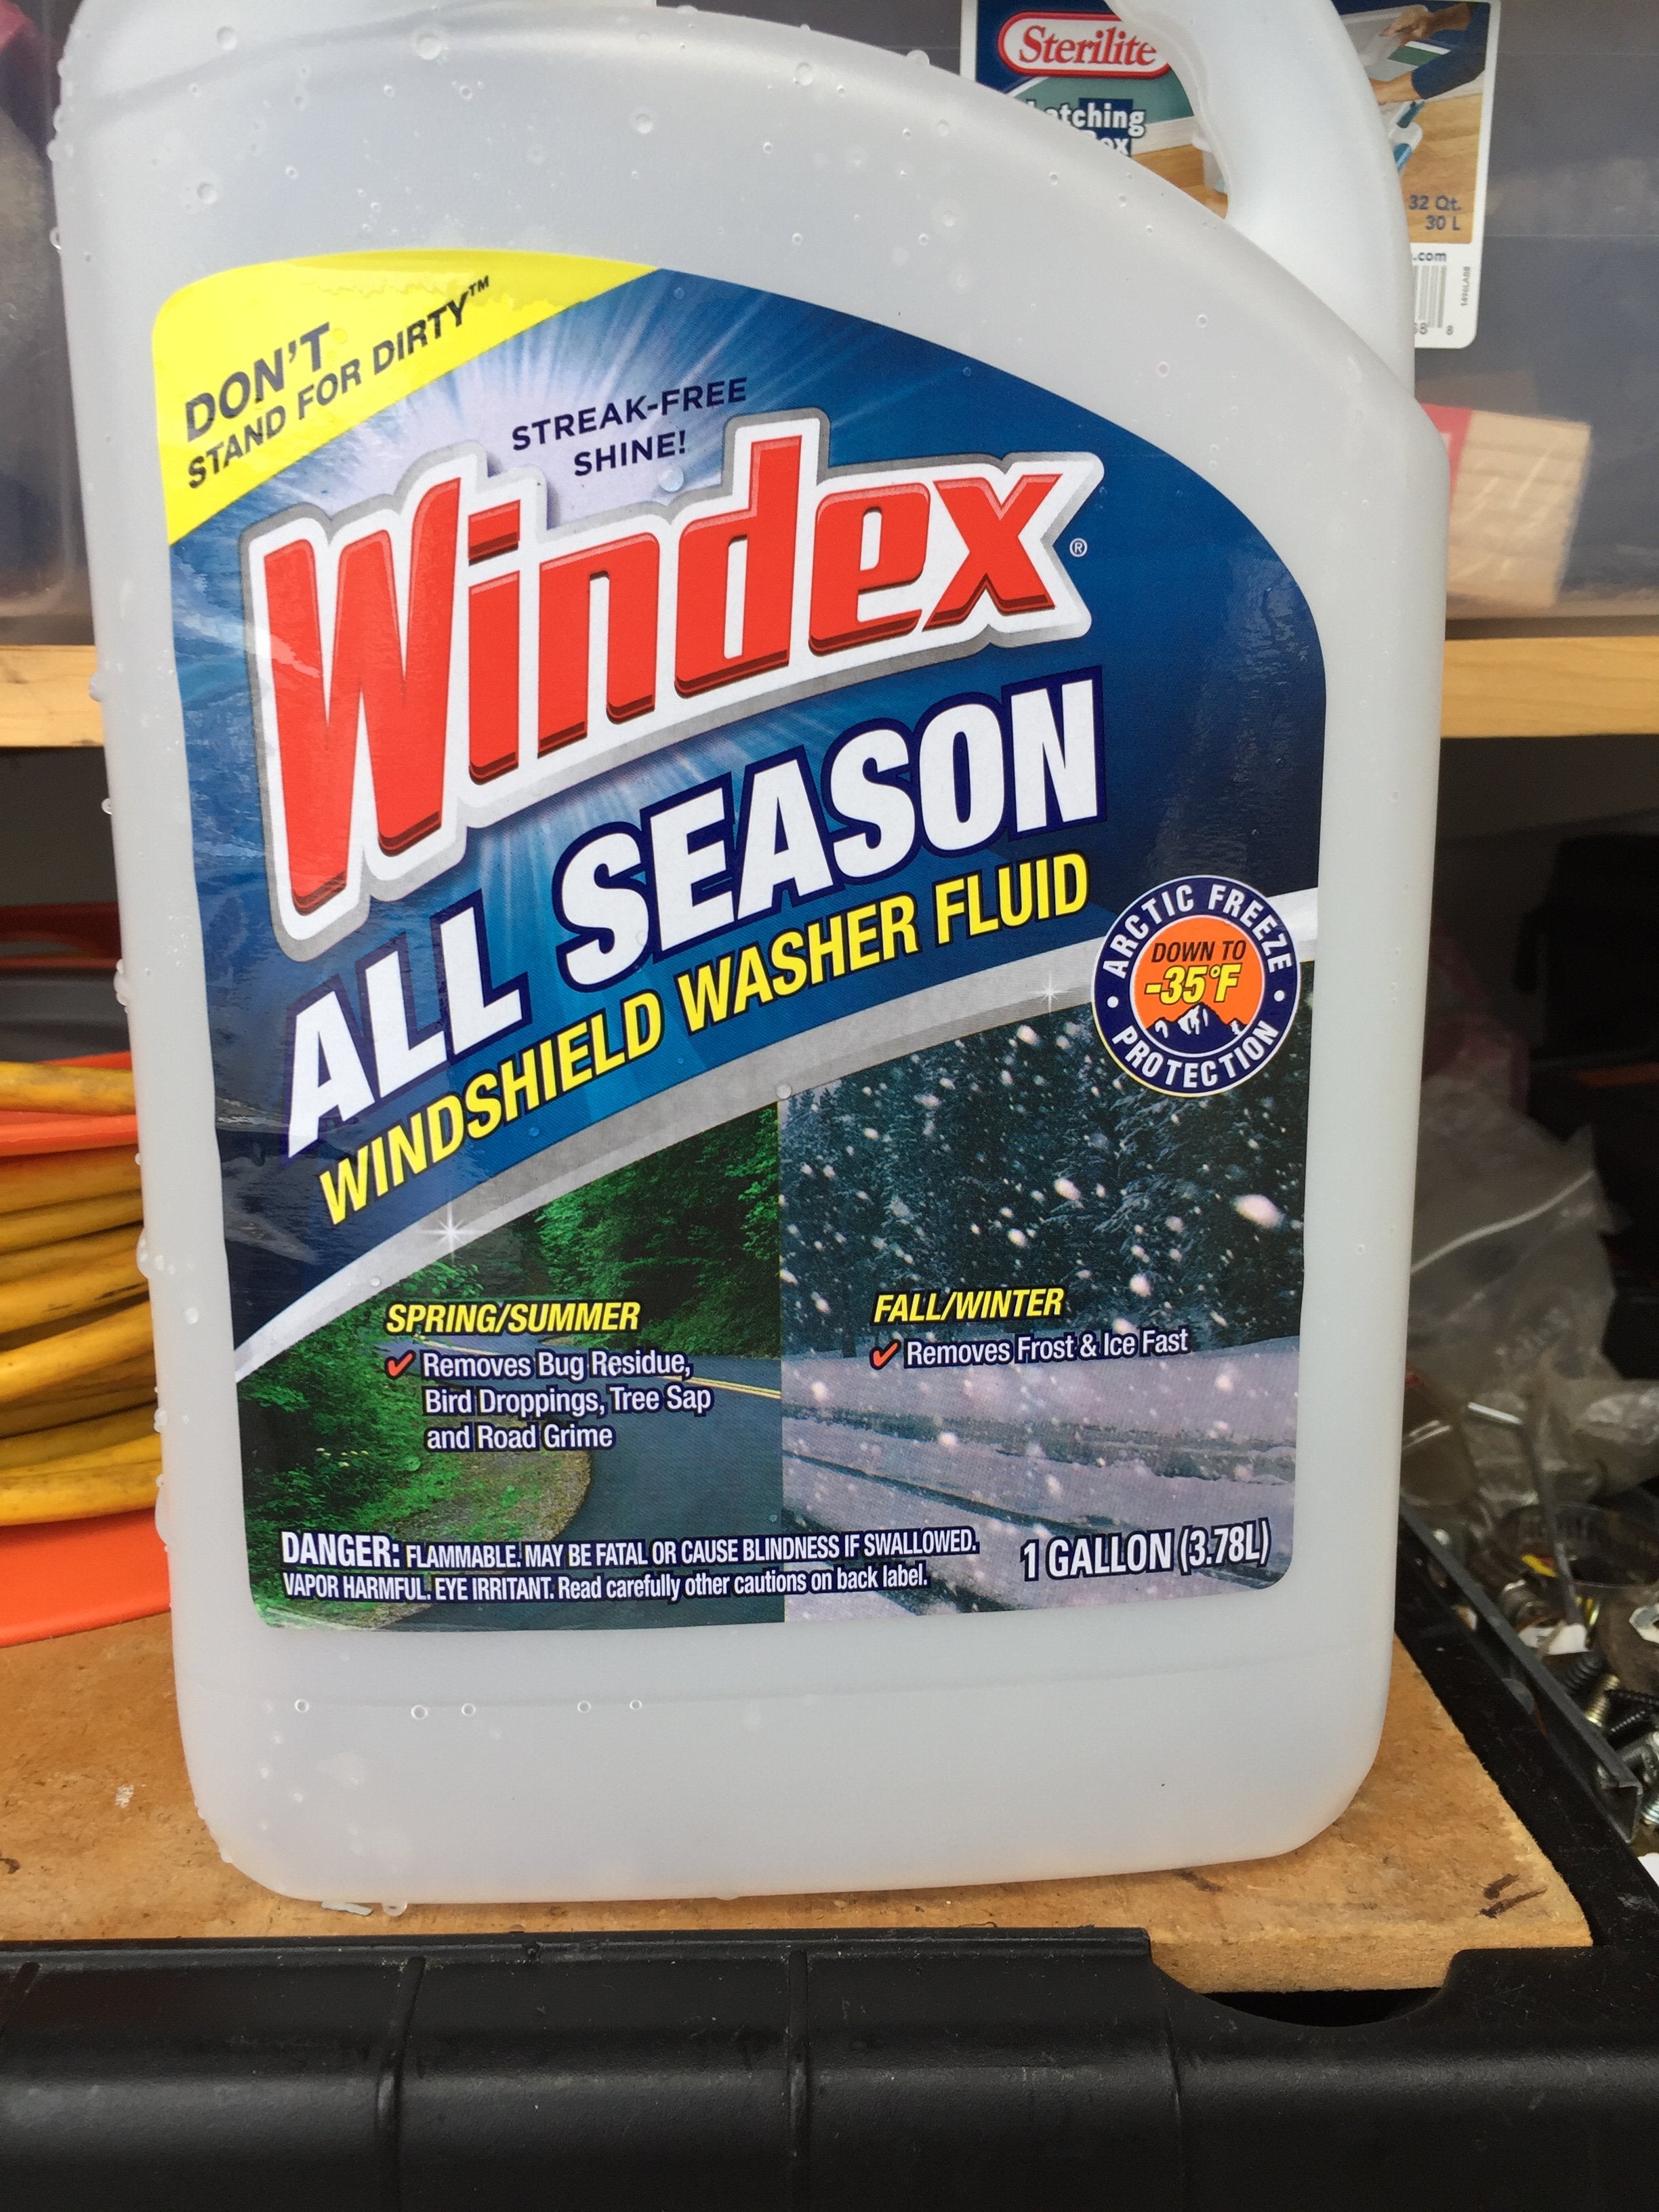 Windshield Washer Fluid: A Winter Hazard